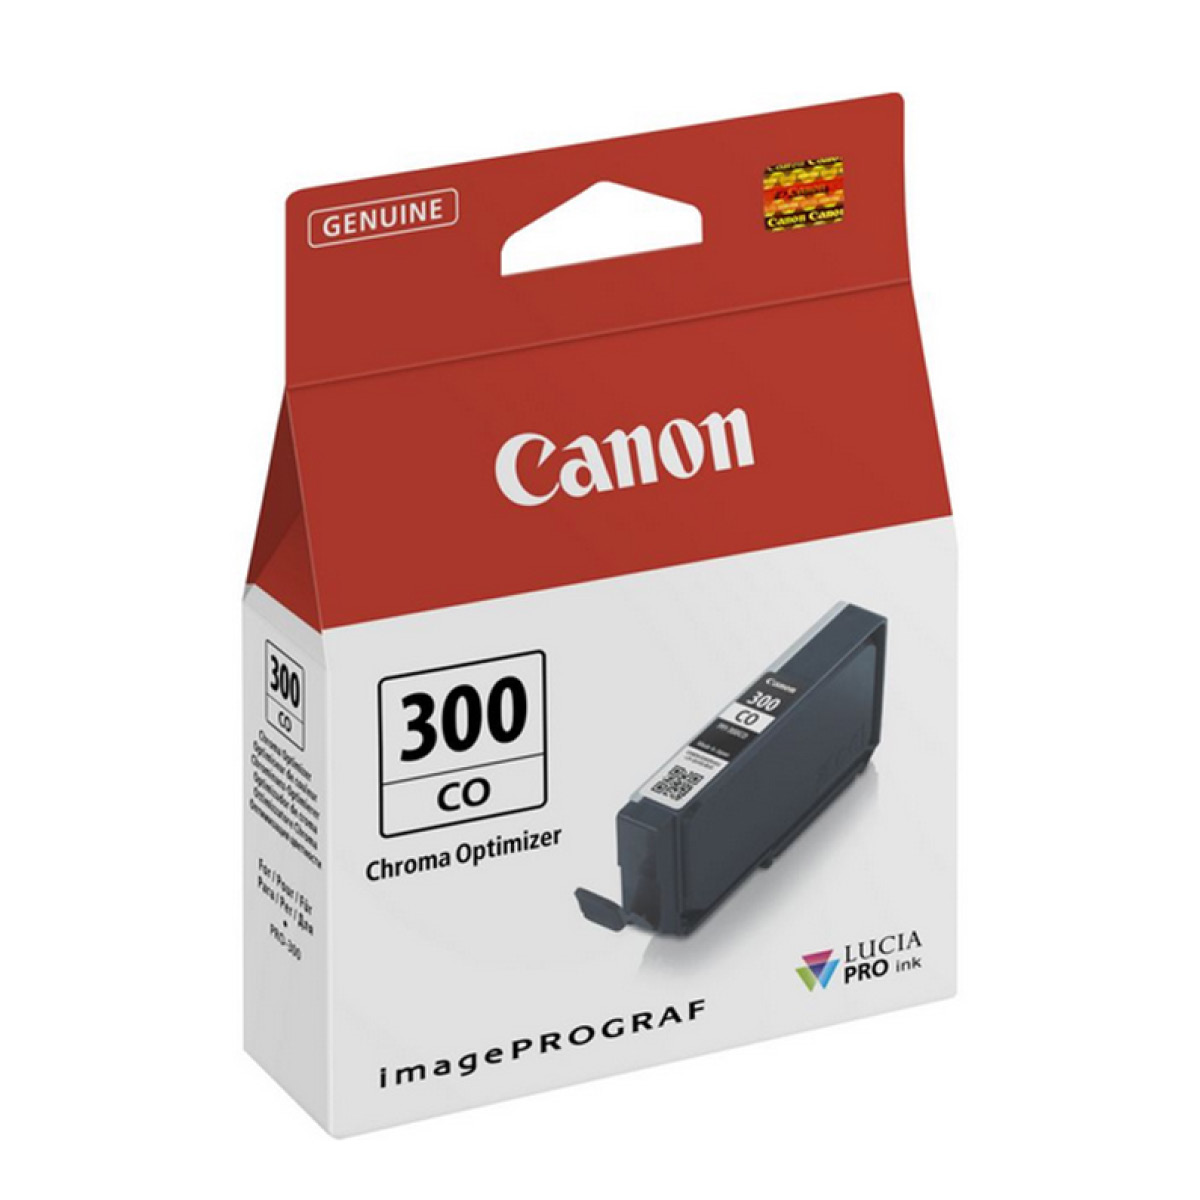 Canon PFI-300CO chroma optimizer Tinte für ImagePrograf PRO-300 A3+